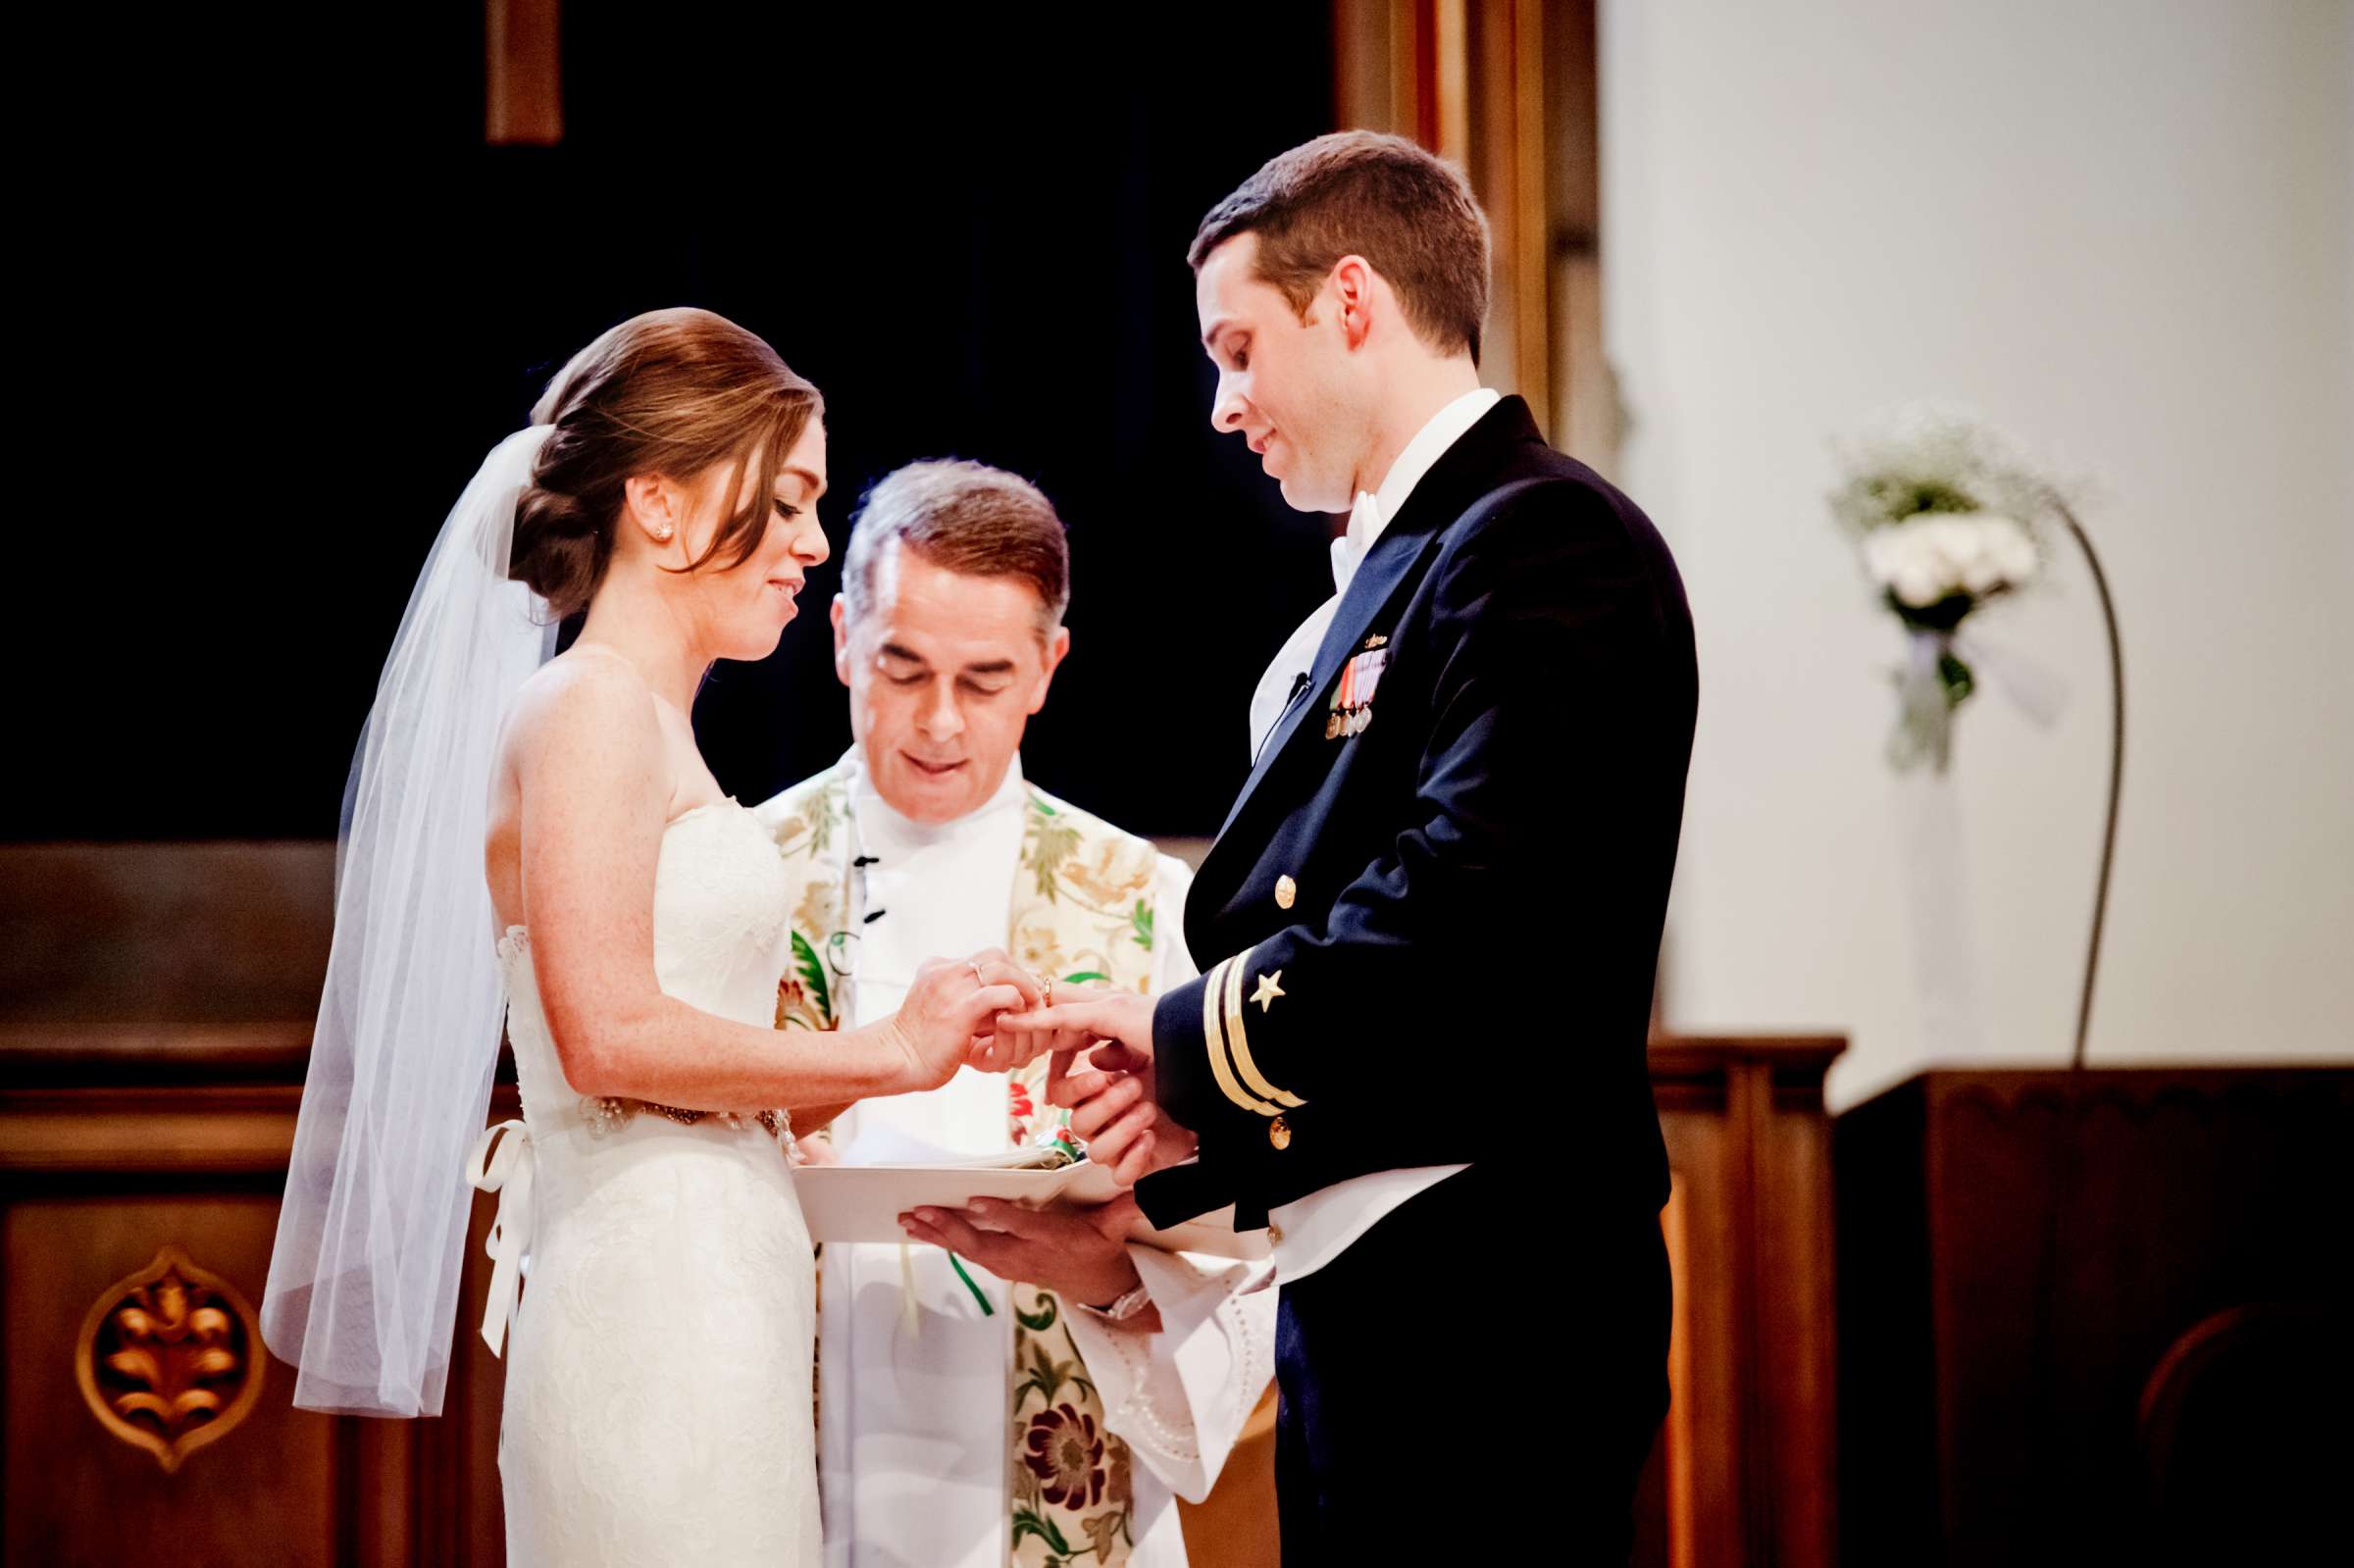 Admiral Kidd Club Wedding coordinated by I Do Weddings, Ashley and Rhett Wedding Photo #358476 by True Photography